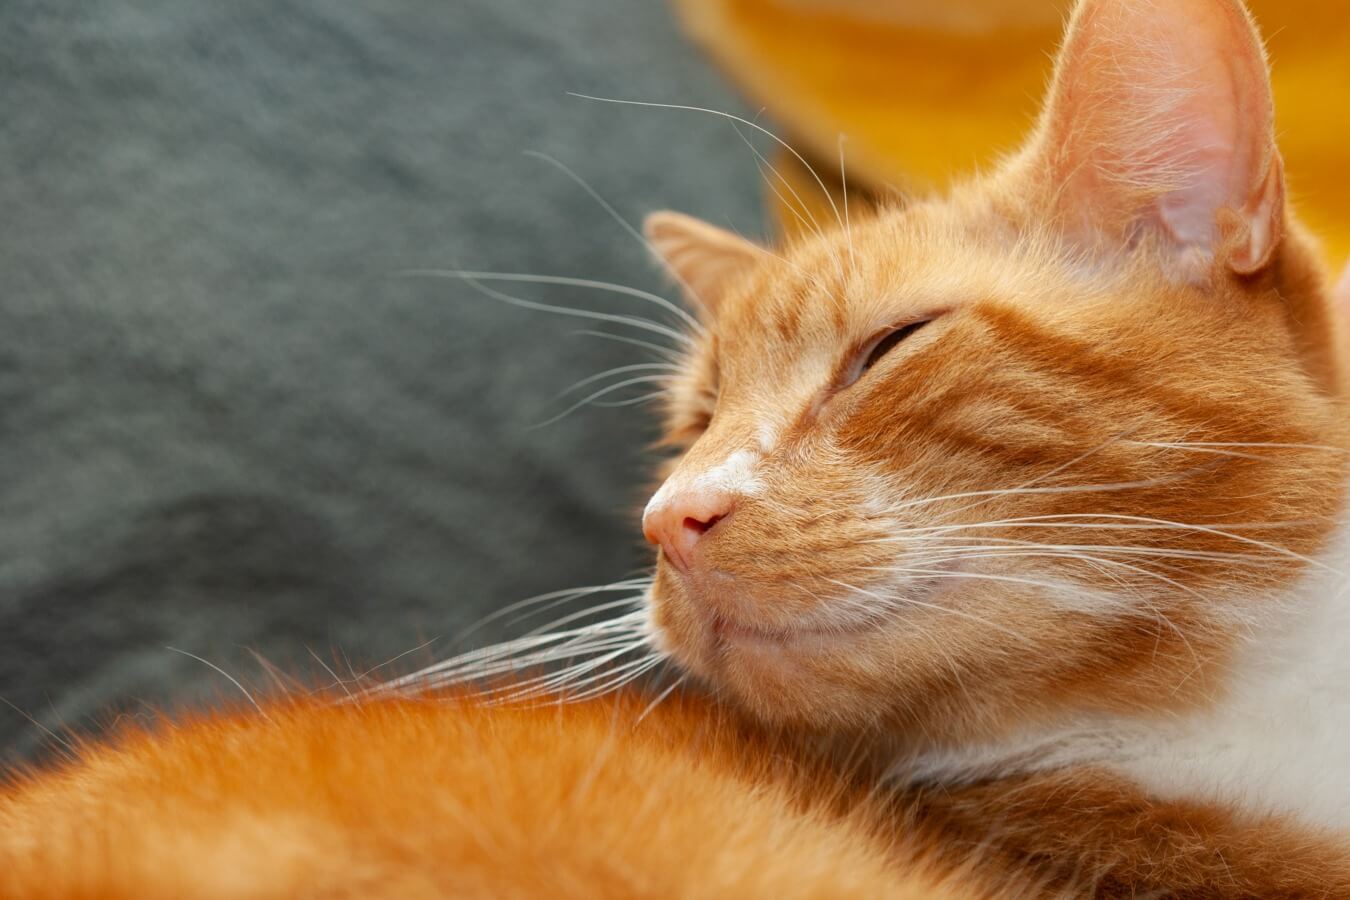 Contract verbannen Mitt De top-3 goede voornemens voor het verwezenlijken van een gelukkige kat -  Petlook